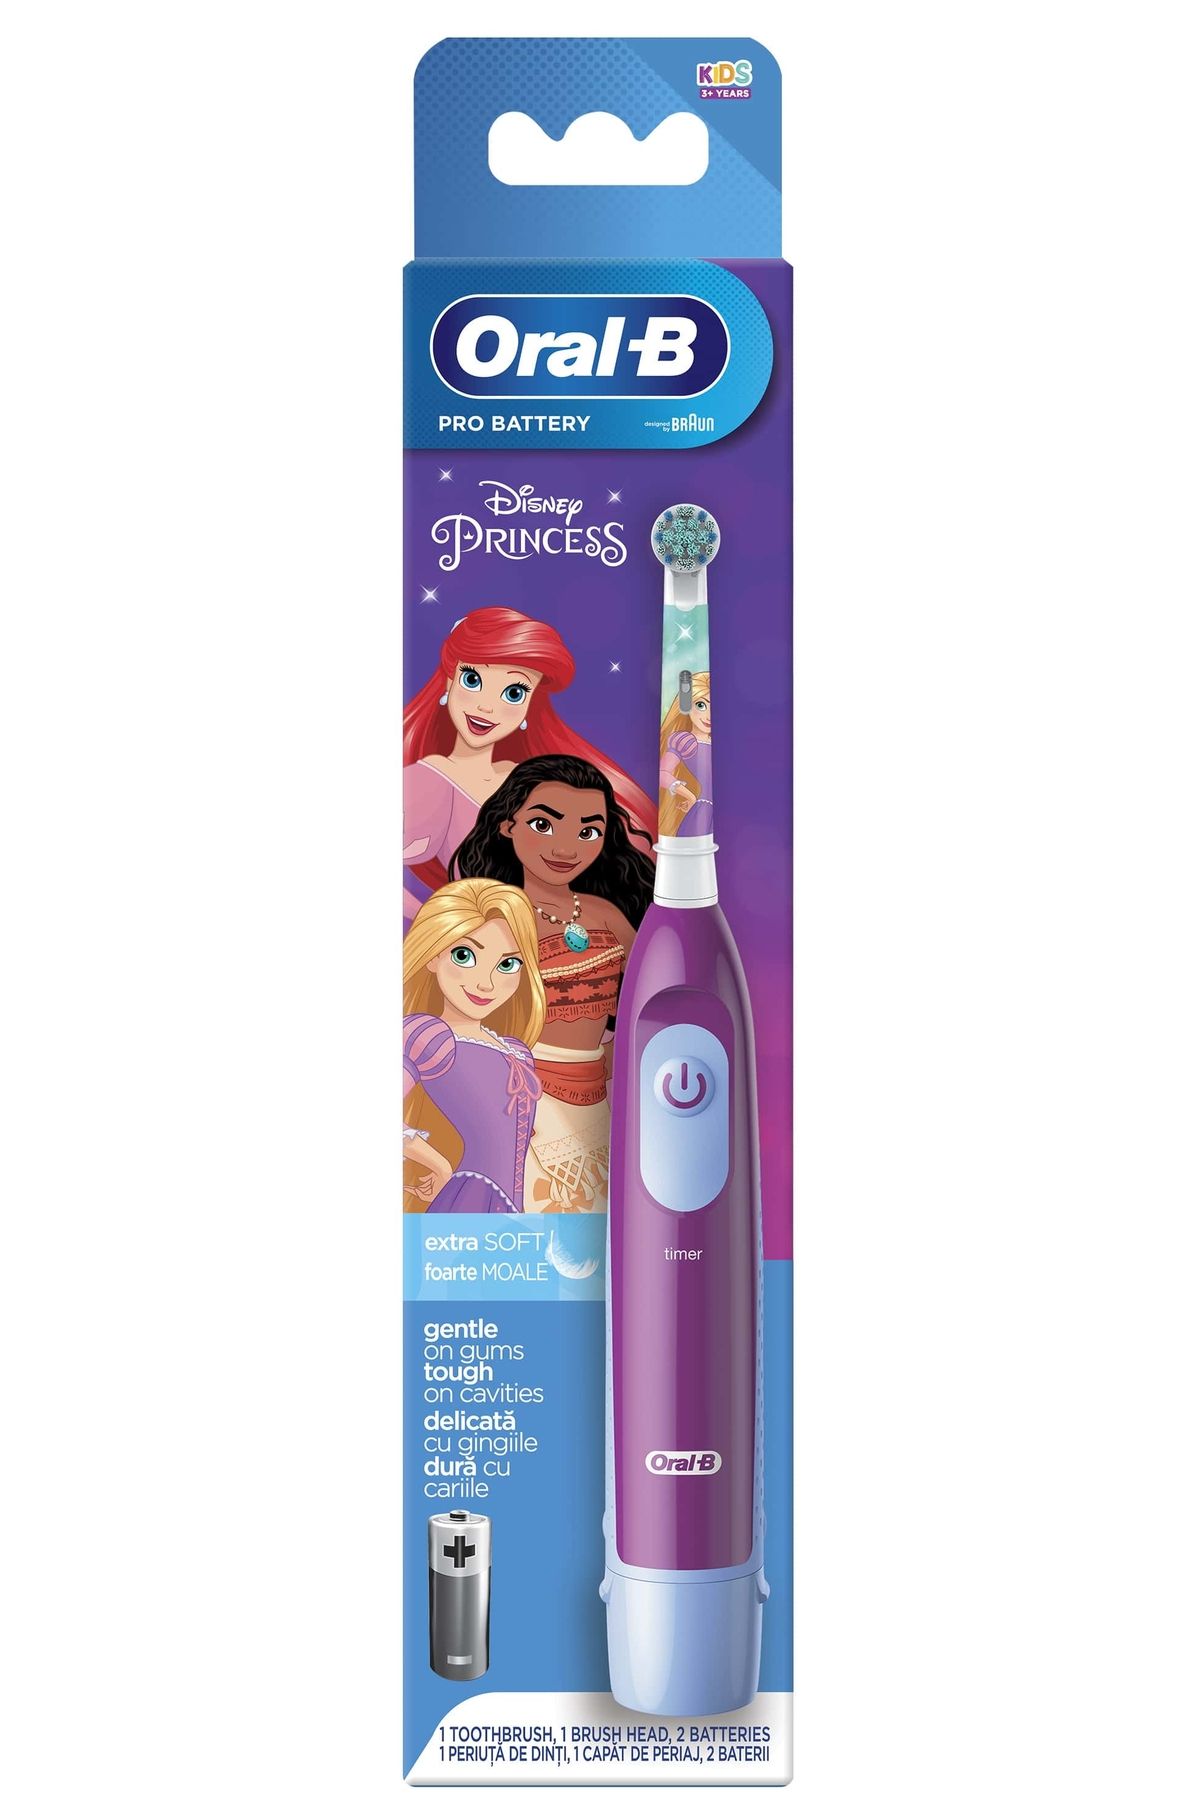 Oral-B Pro Battery Princess Çocuk Pilli Diş Fırçası